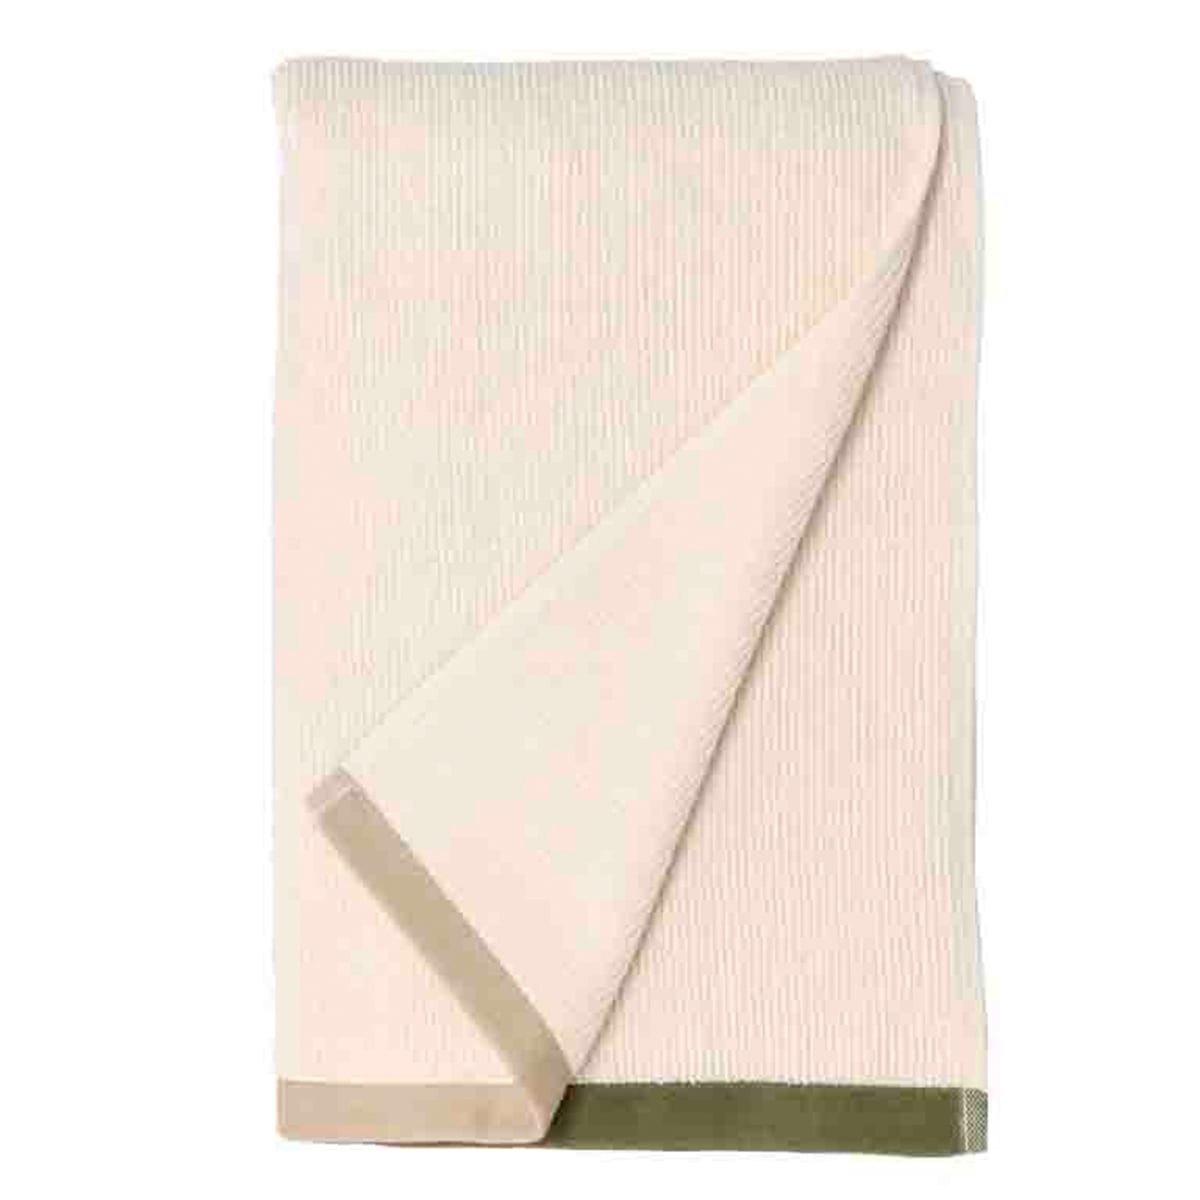 södahl - contrast serviette de bain 70 x 140 cm, olive